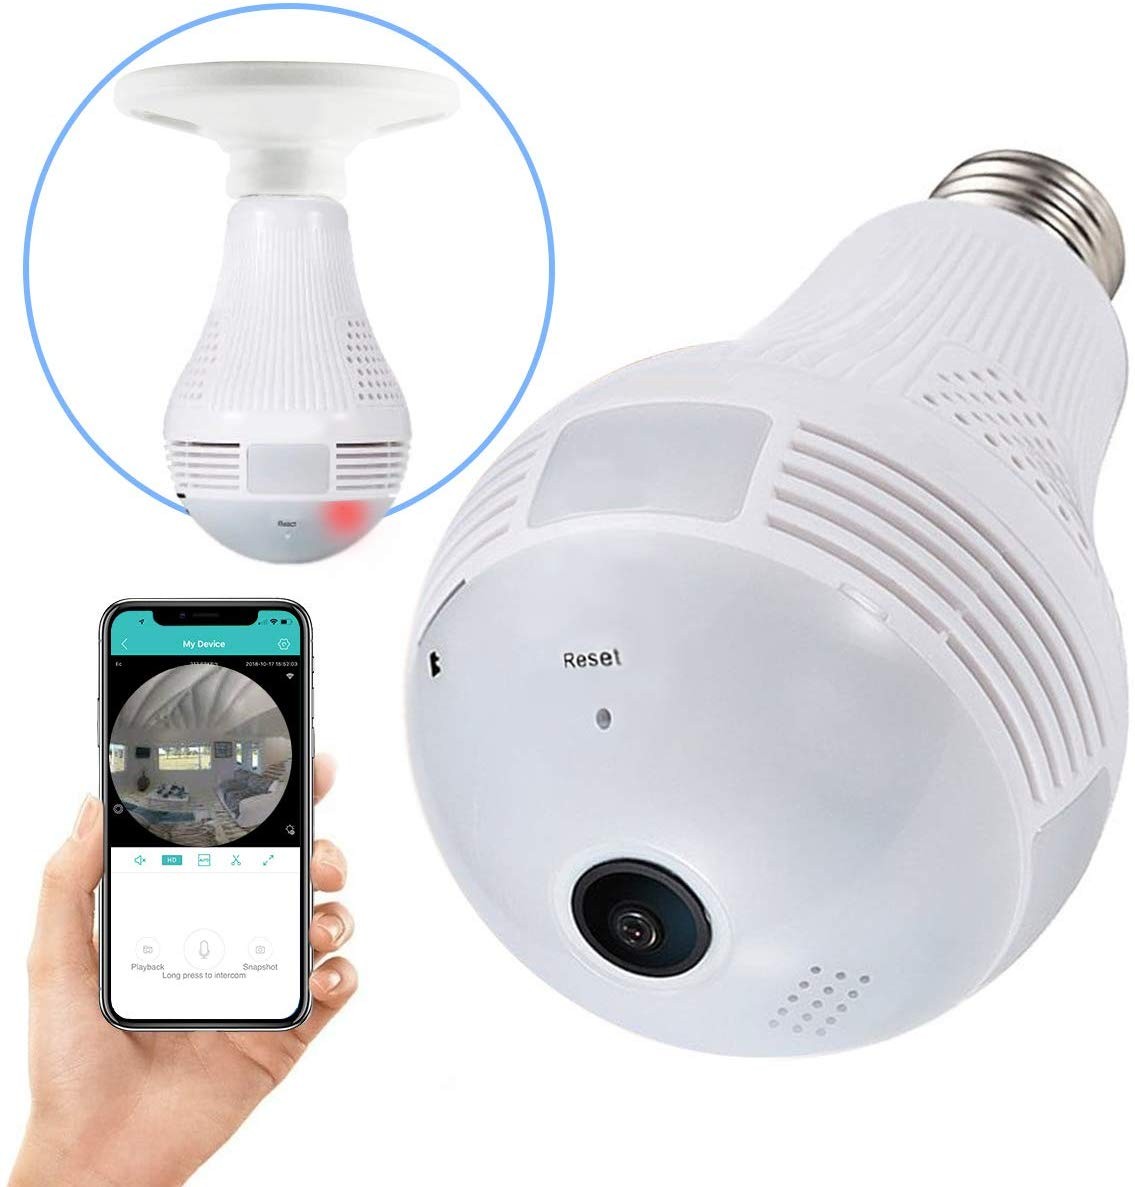 hidden camera in bulb holder